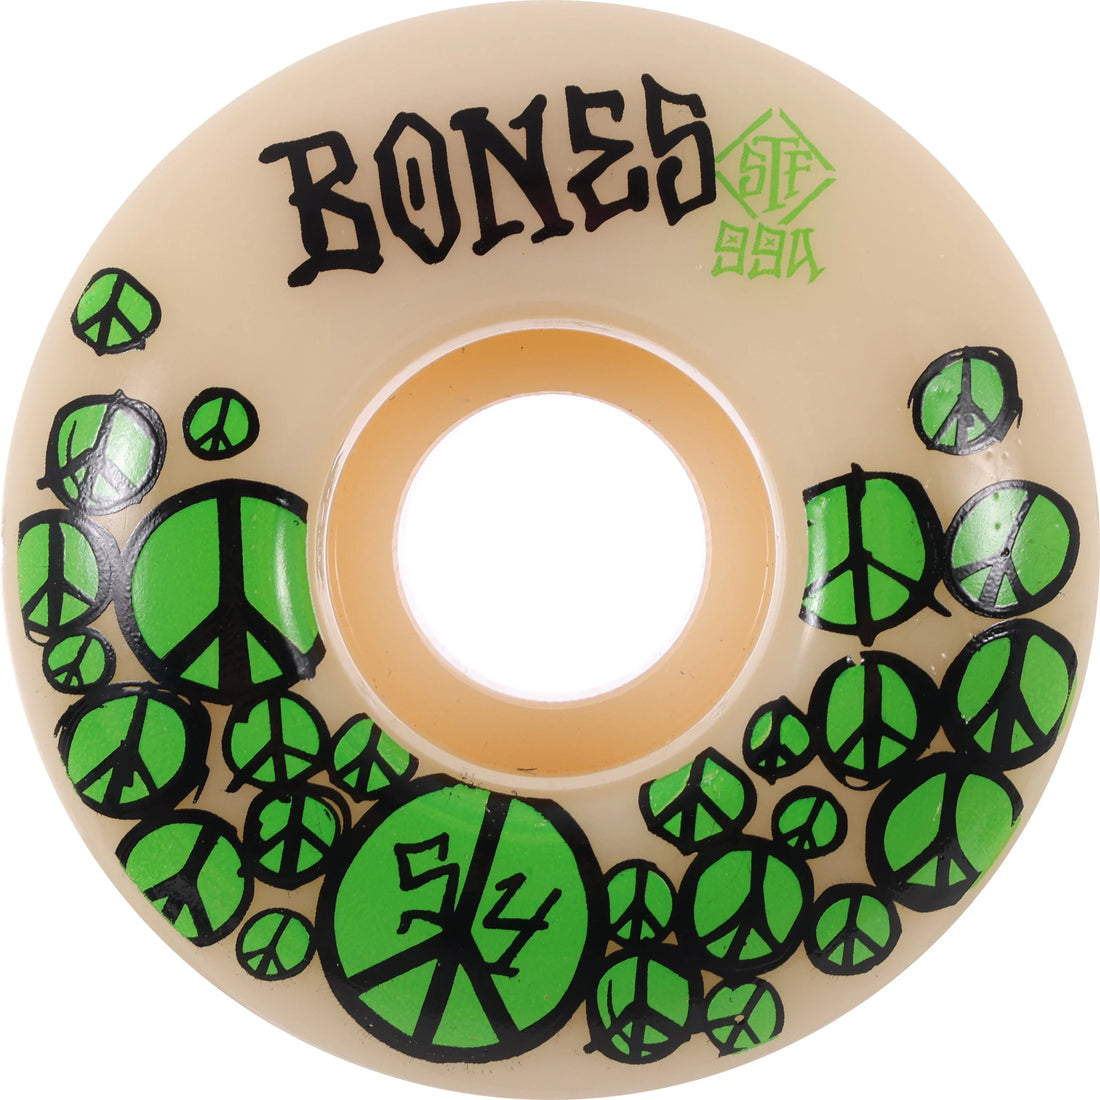 Bones Peace Street Tech Wheels 54mm 99a